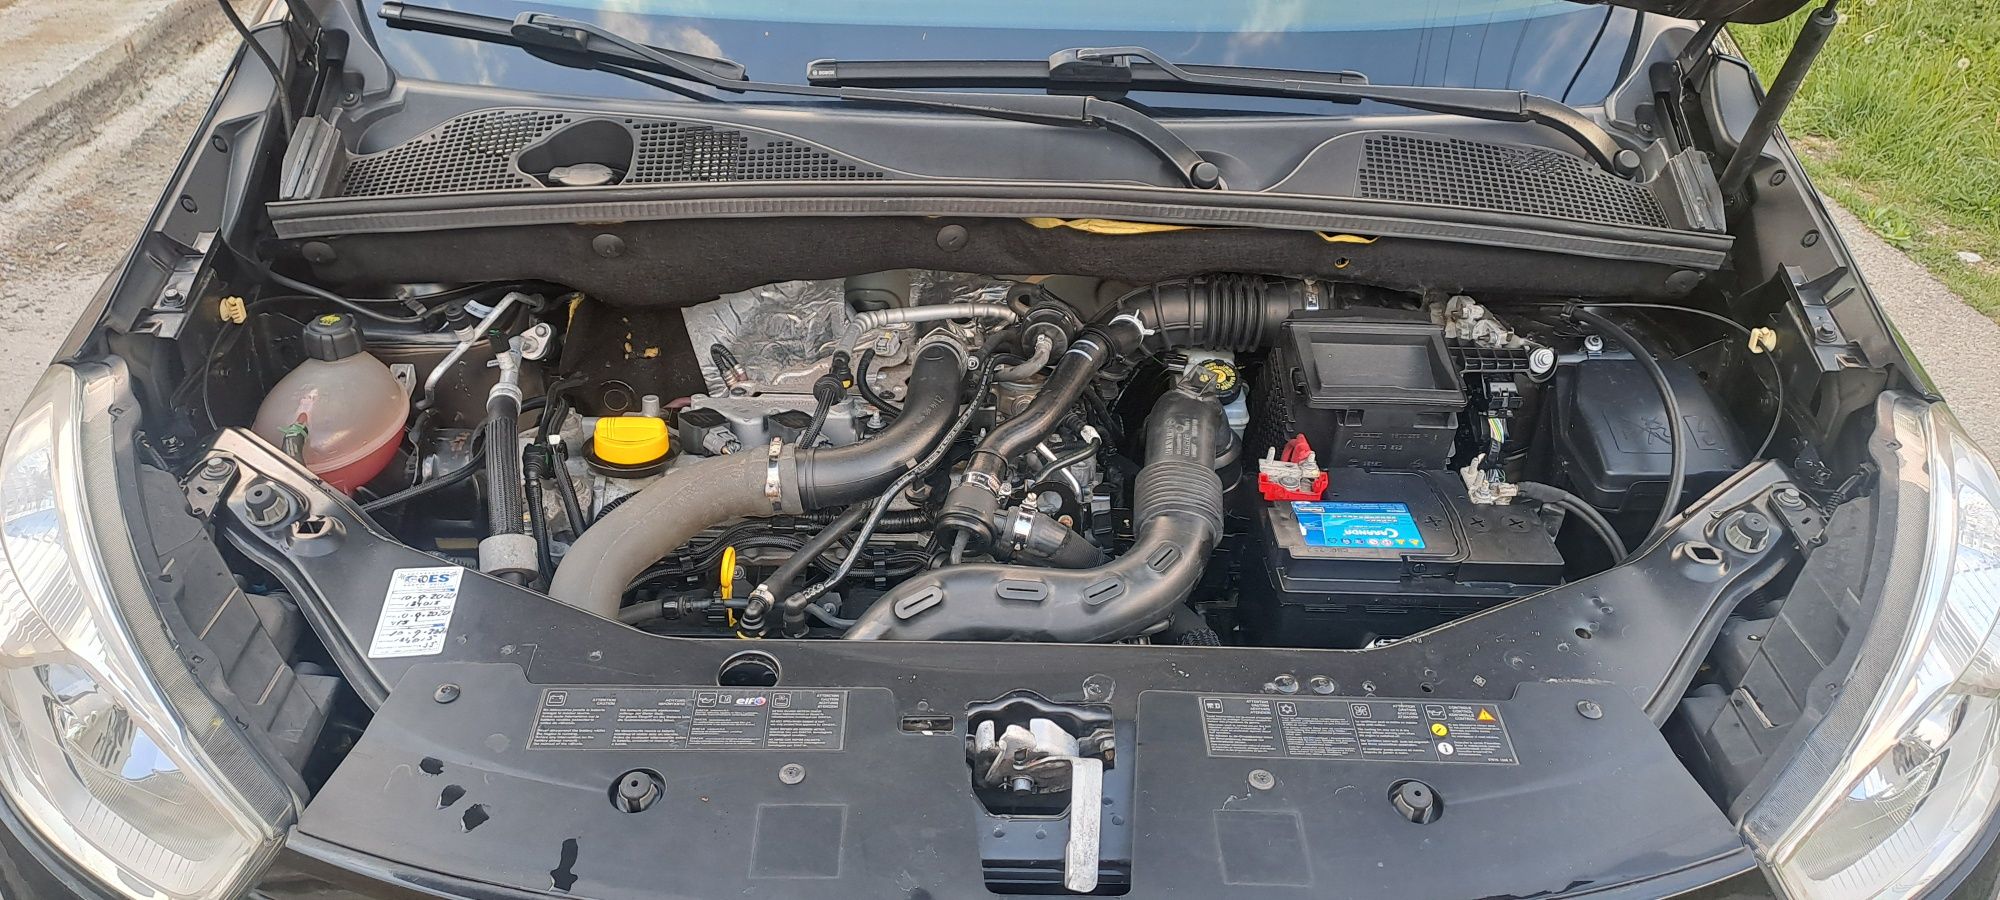 Dacia LODGY an fab.2015 7 locuri